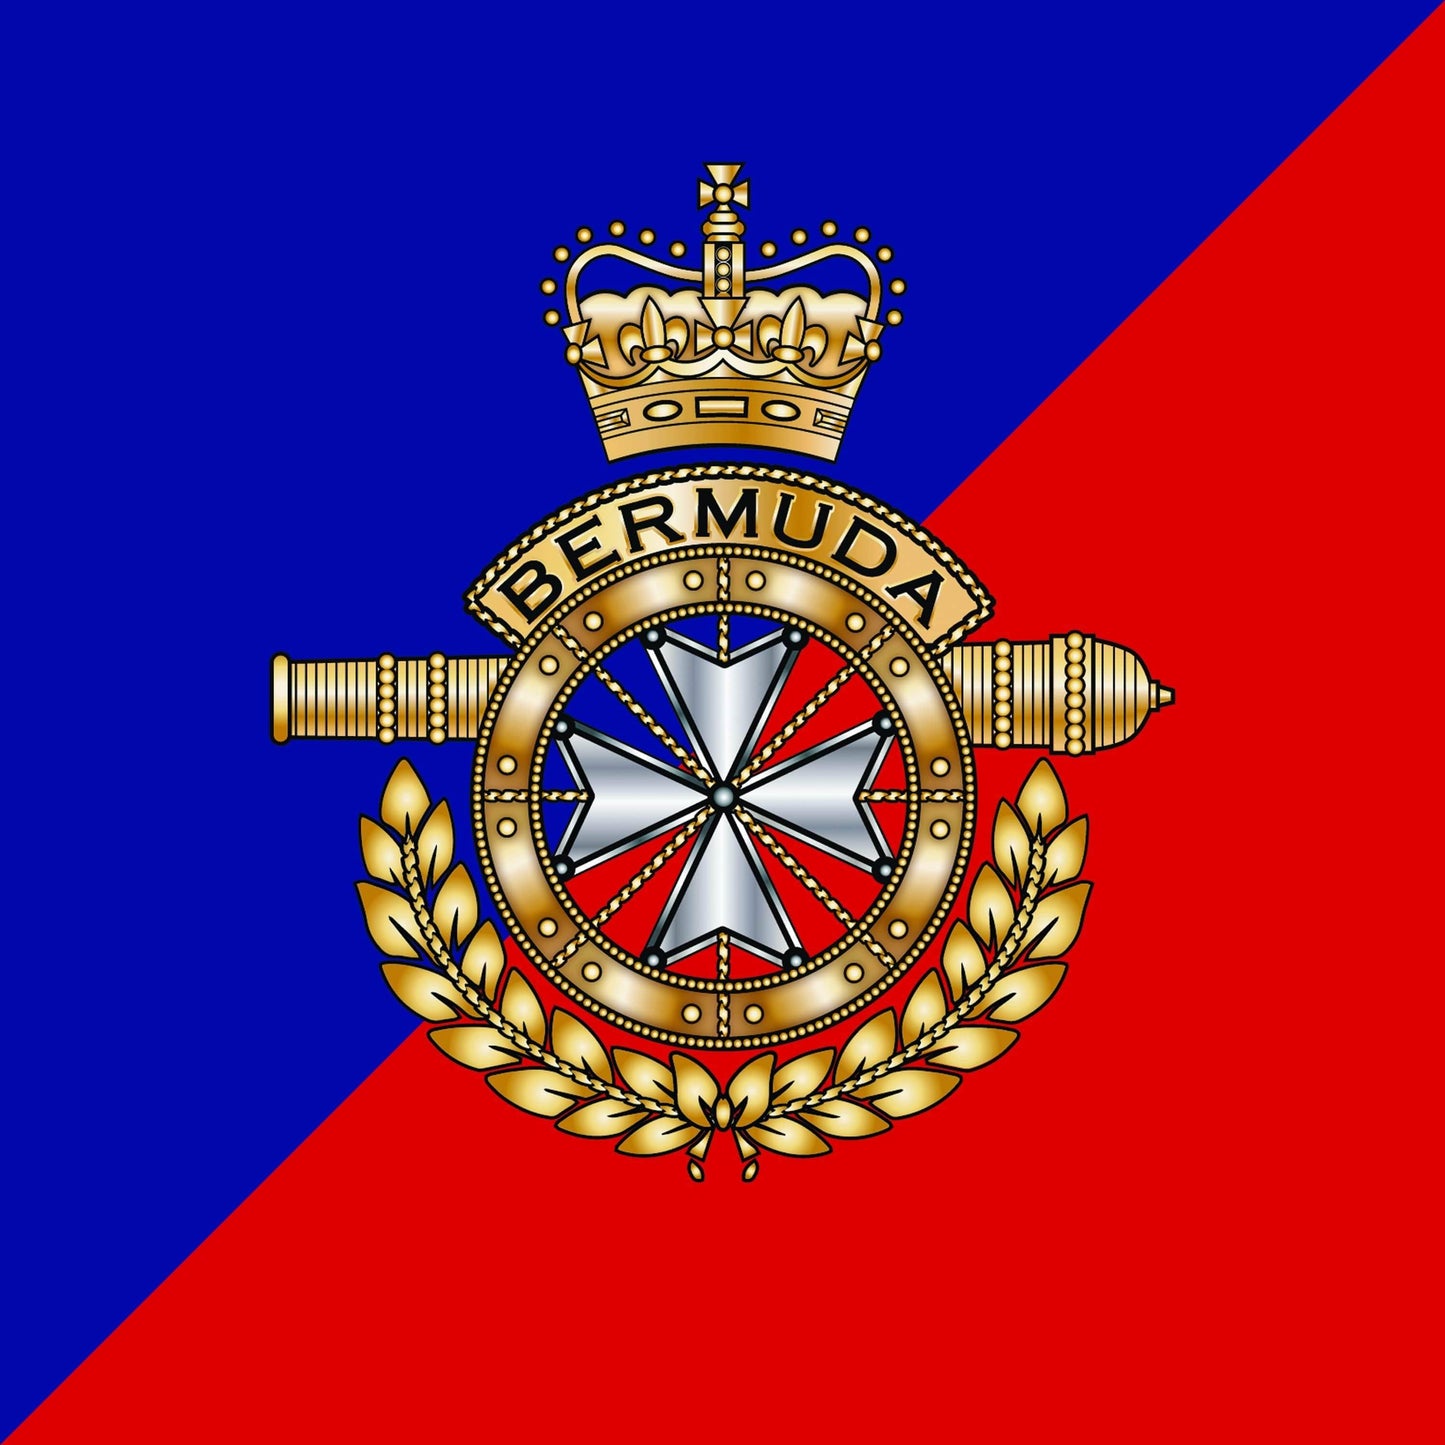 cushion cover Royal Bermuda Regiment Cushion Cover